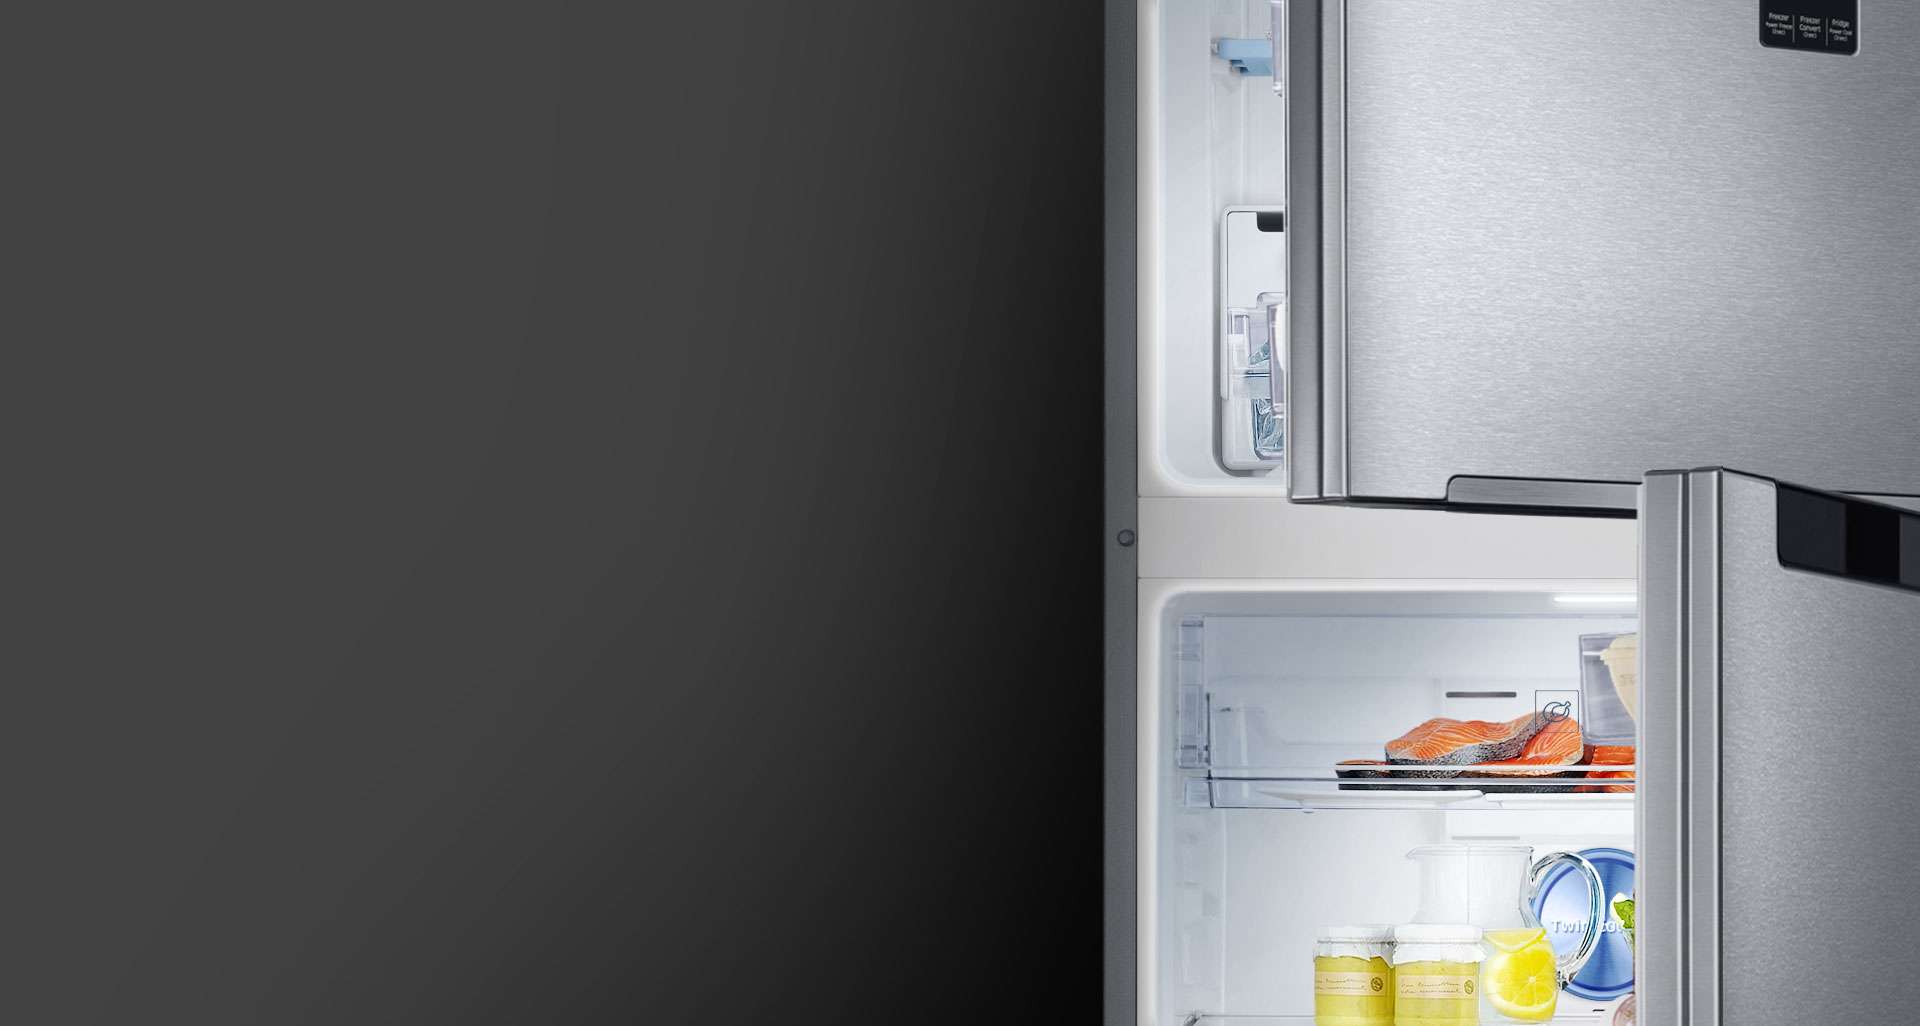 Tủ lạnh hai cửa Samsung Twin Cooling Plus 308L (RT29K5532BU) | Công nghệ 2 dàn lạnh độc lập Twin Cooling PlusTM | Ngăn lẫn mùi | 5 Chế độ chuyển đổi | Tiết kiệm năng lượng | Bền bỉ ít ồn | Hàng chính hãng | Bảo hành 2 năm